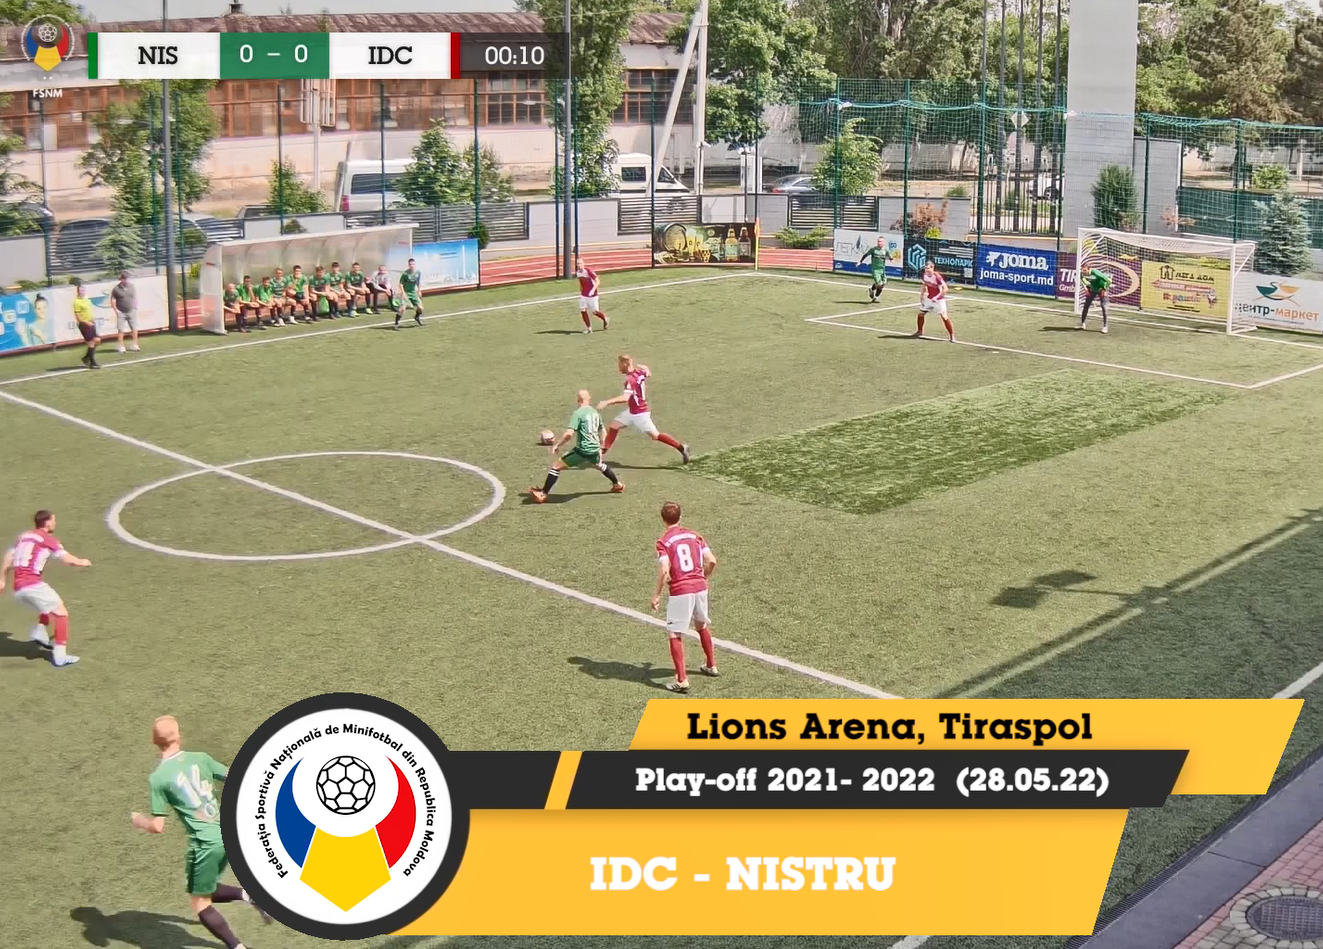 Match highlights ECOLUX/VOLTA & NISTRU/IDC SEMIFINAL